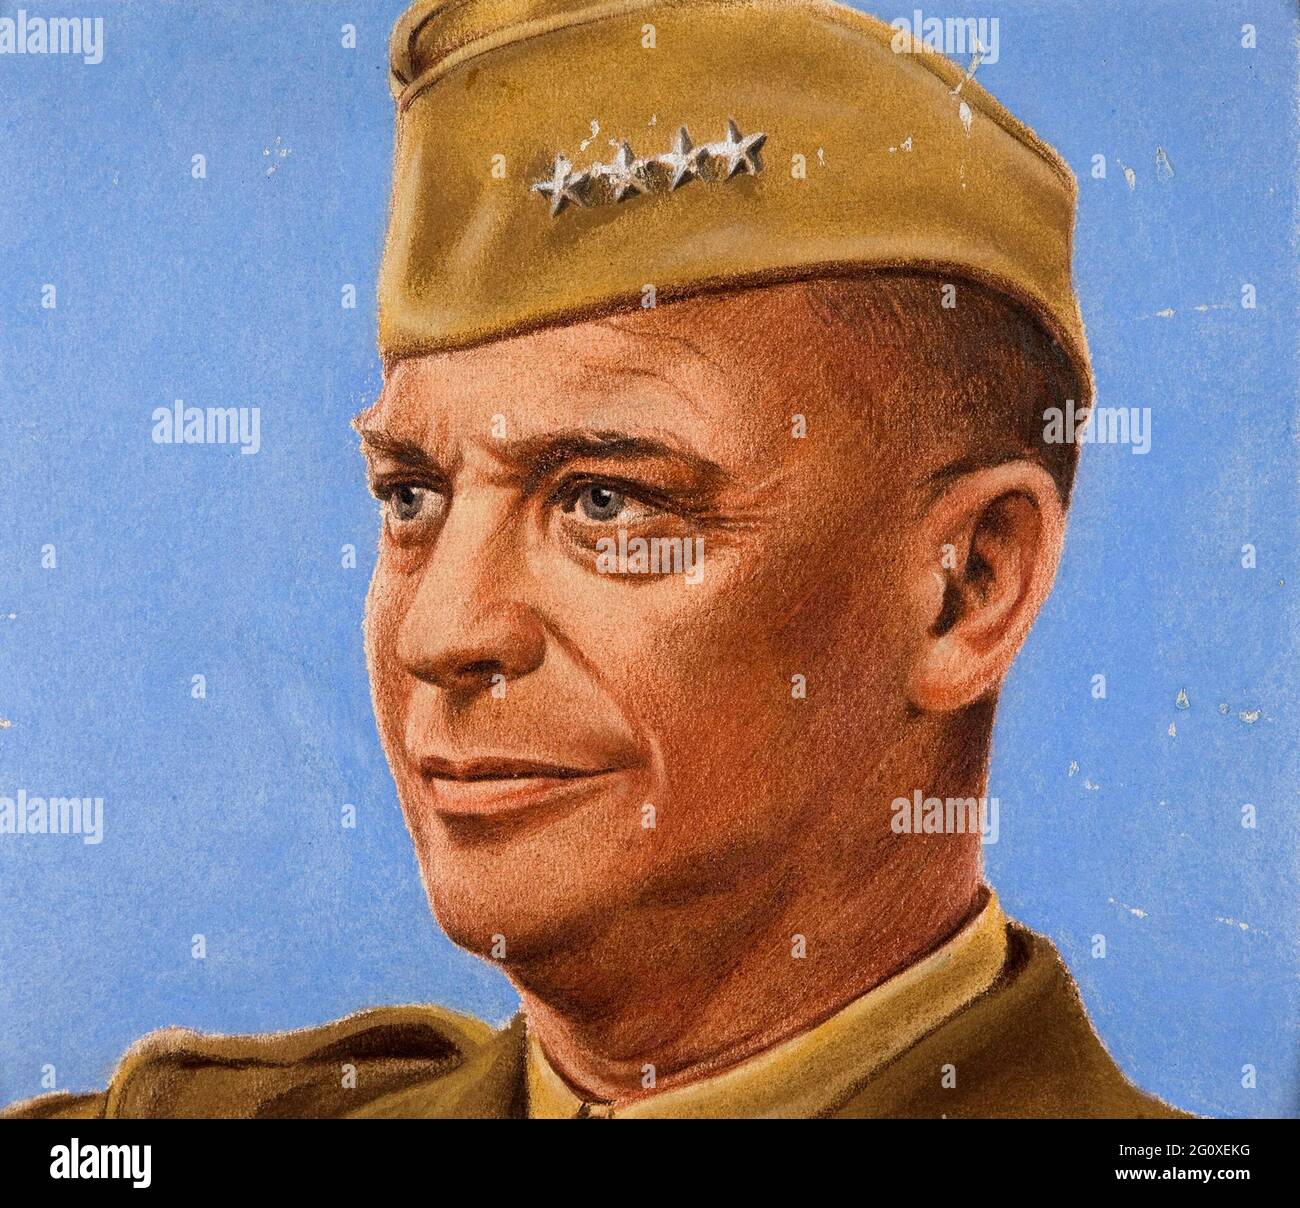 Ein Porträt von Dwight Eisenhower, gezeichnet für das britische Informationsministerium vom österreichischen Künstler William Timym Stockfoto